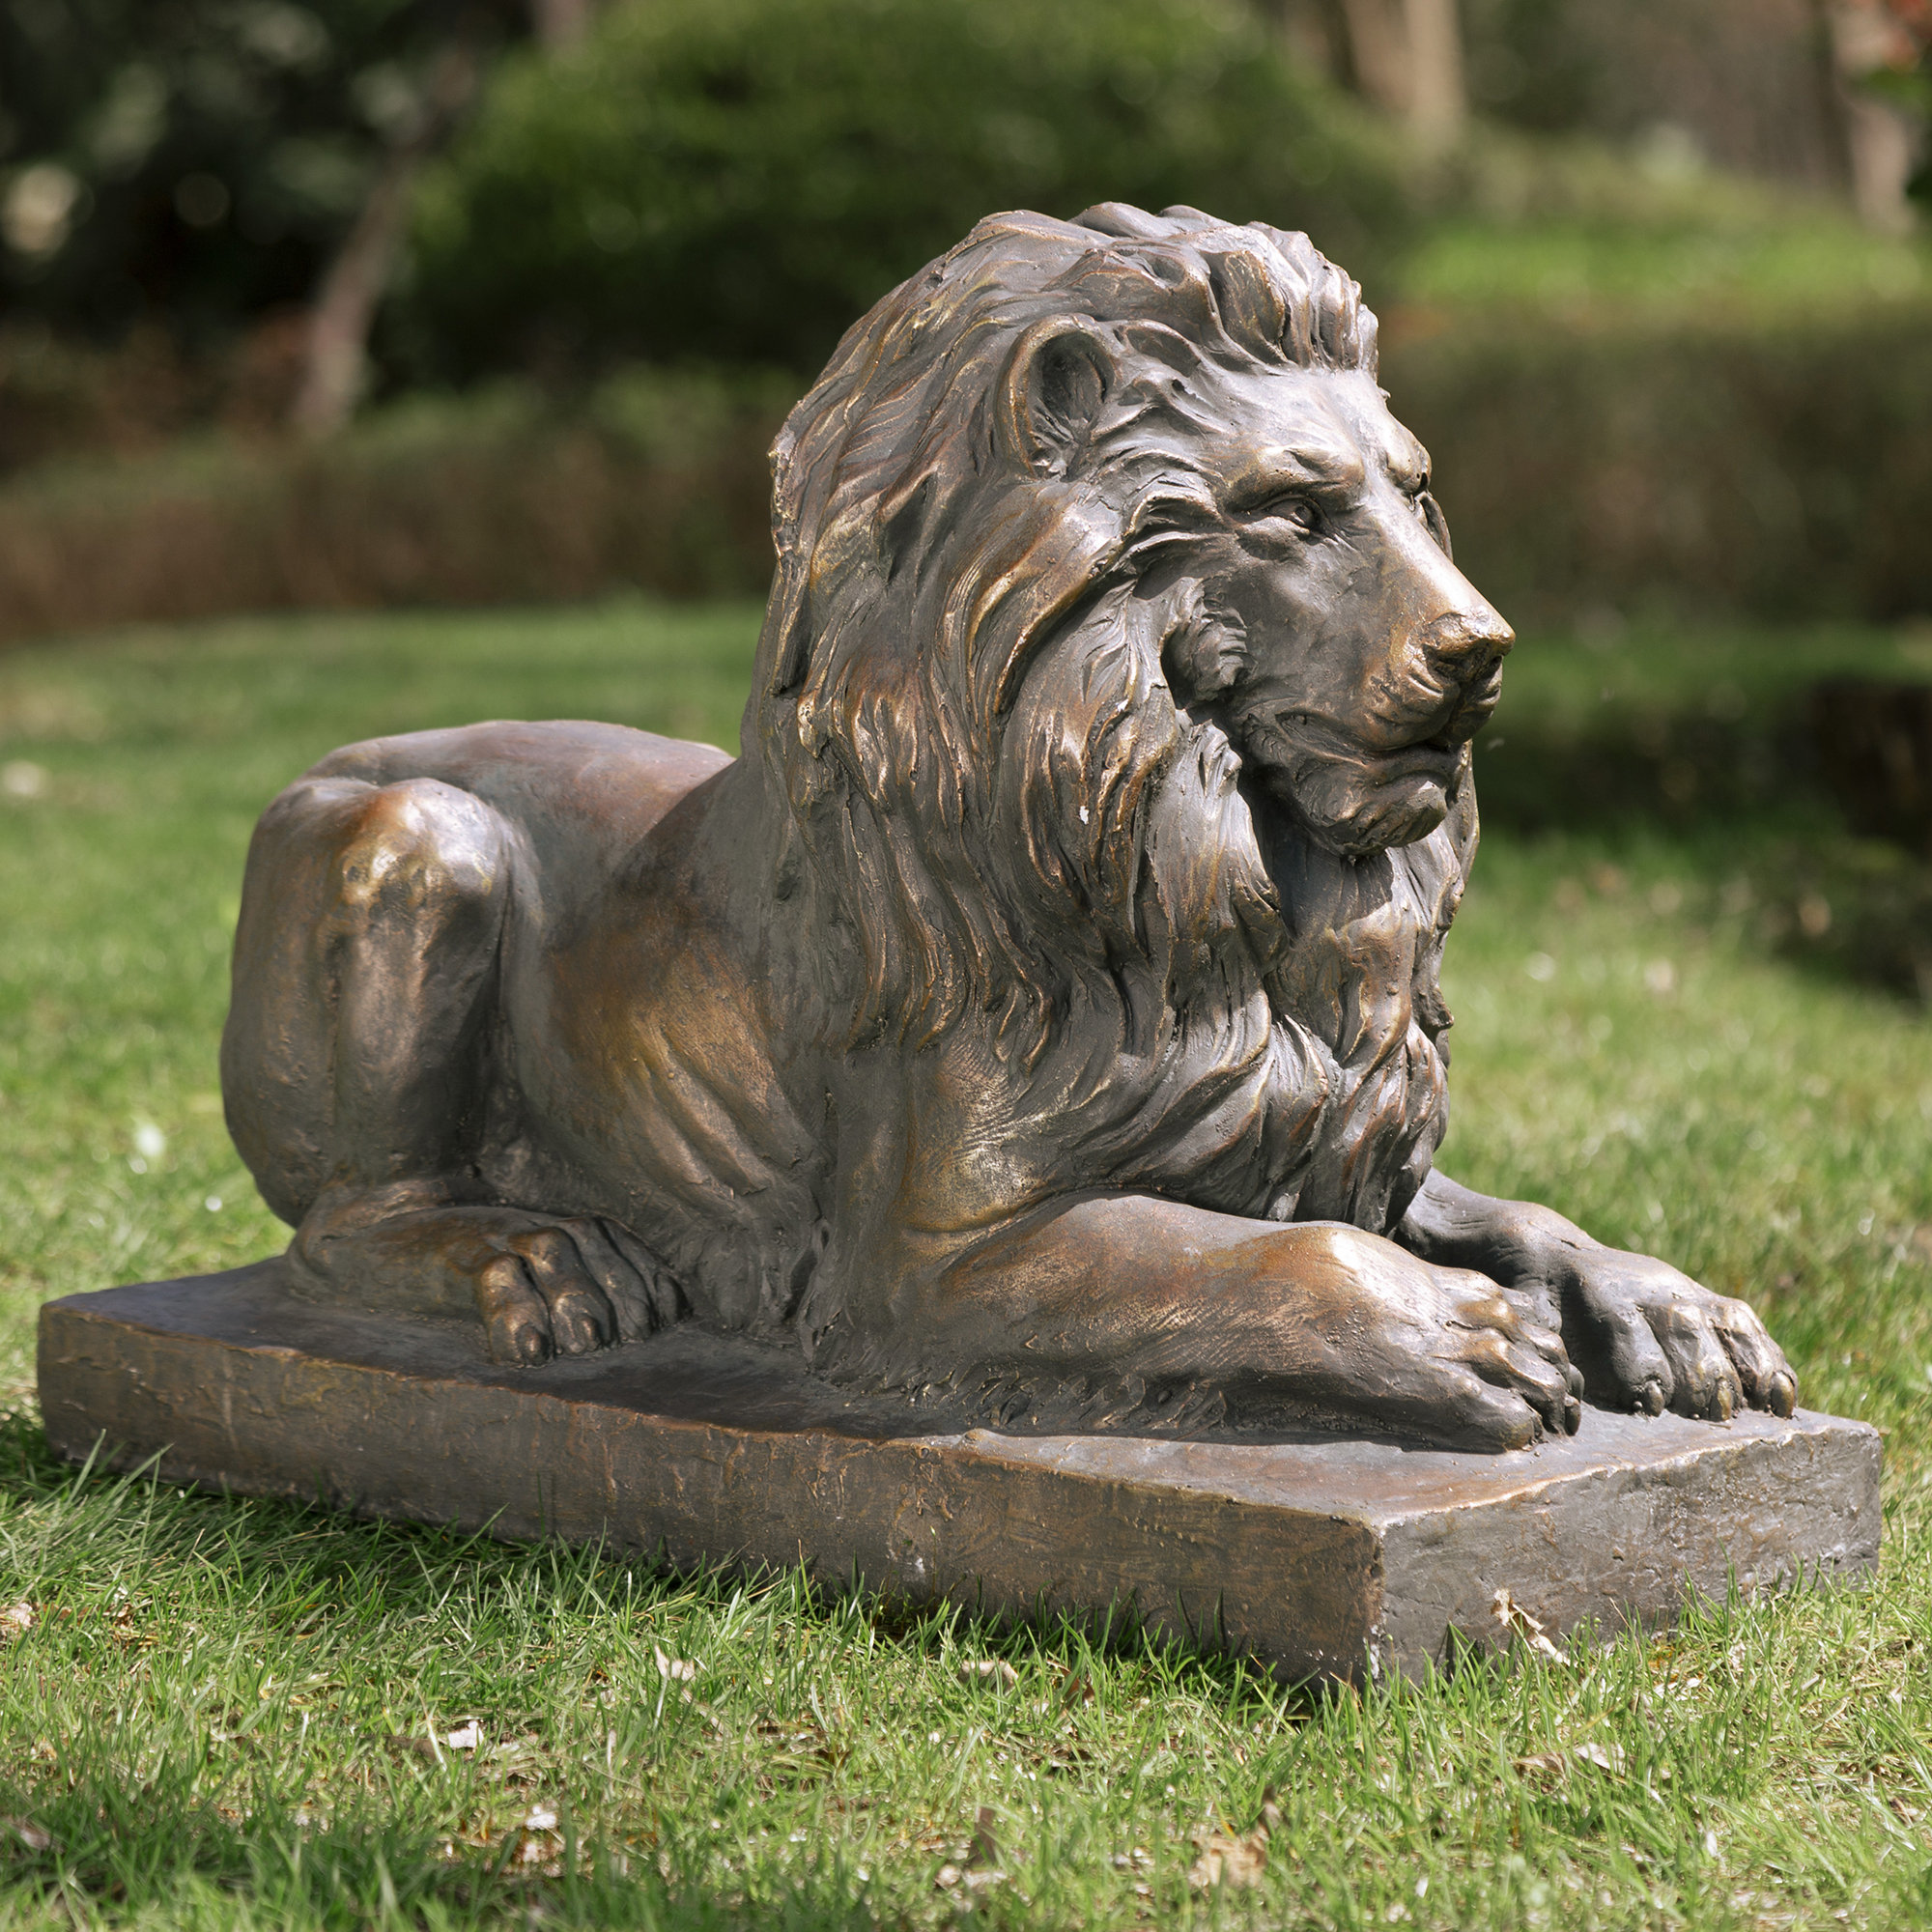 https://assets.wfcdn.com/im/62580653/compr-r85/1411/141187791/selah-lion-animals-mgo-garden-statue.jpg